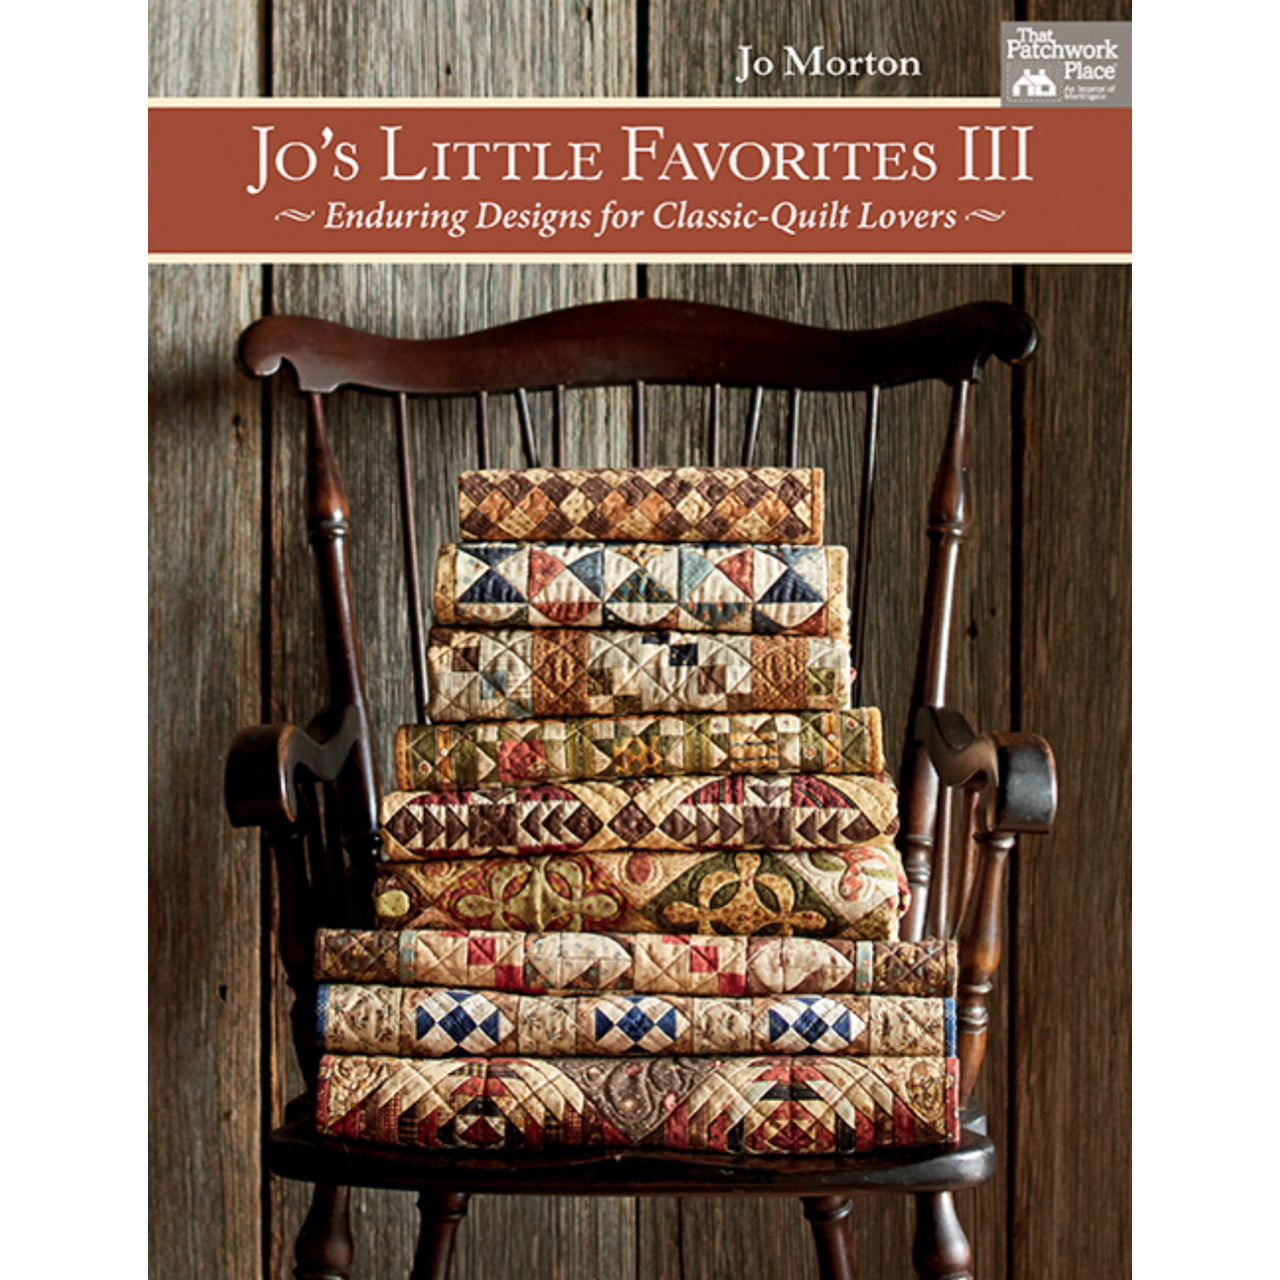 Jo's Little Favorites III by Jo Morton